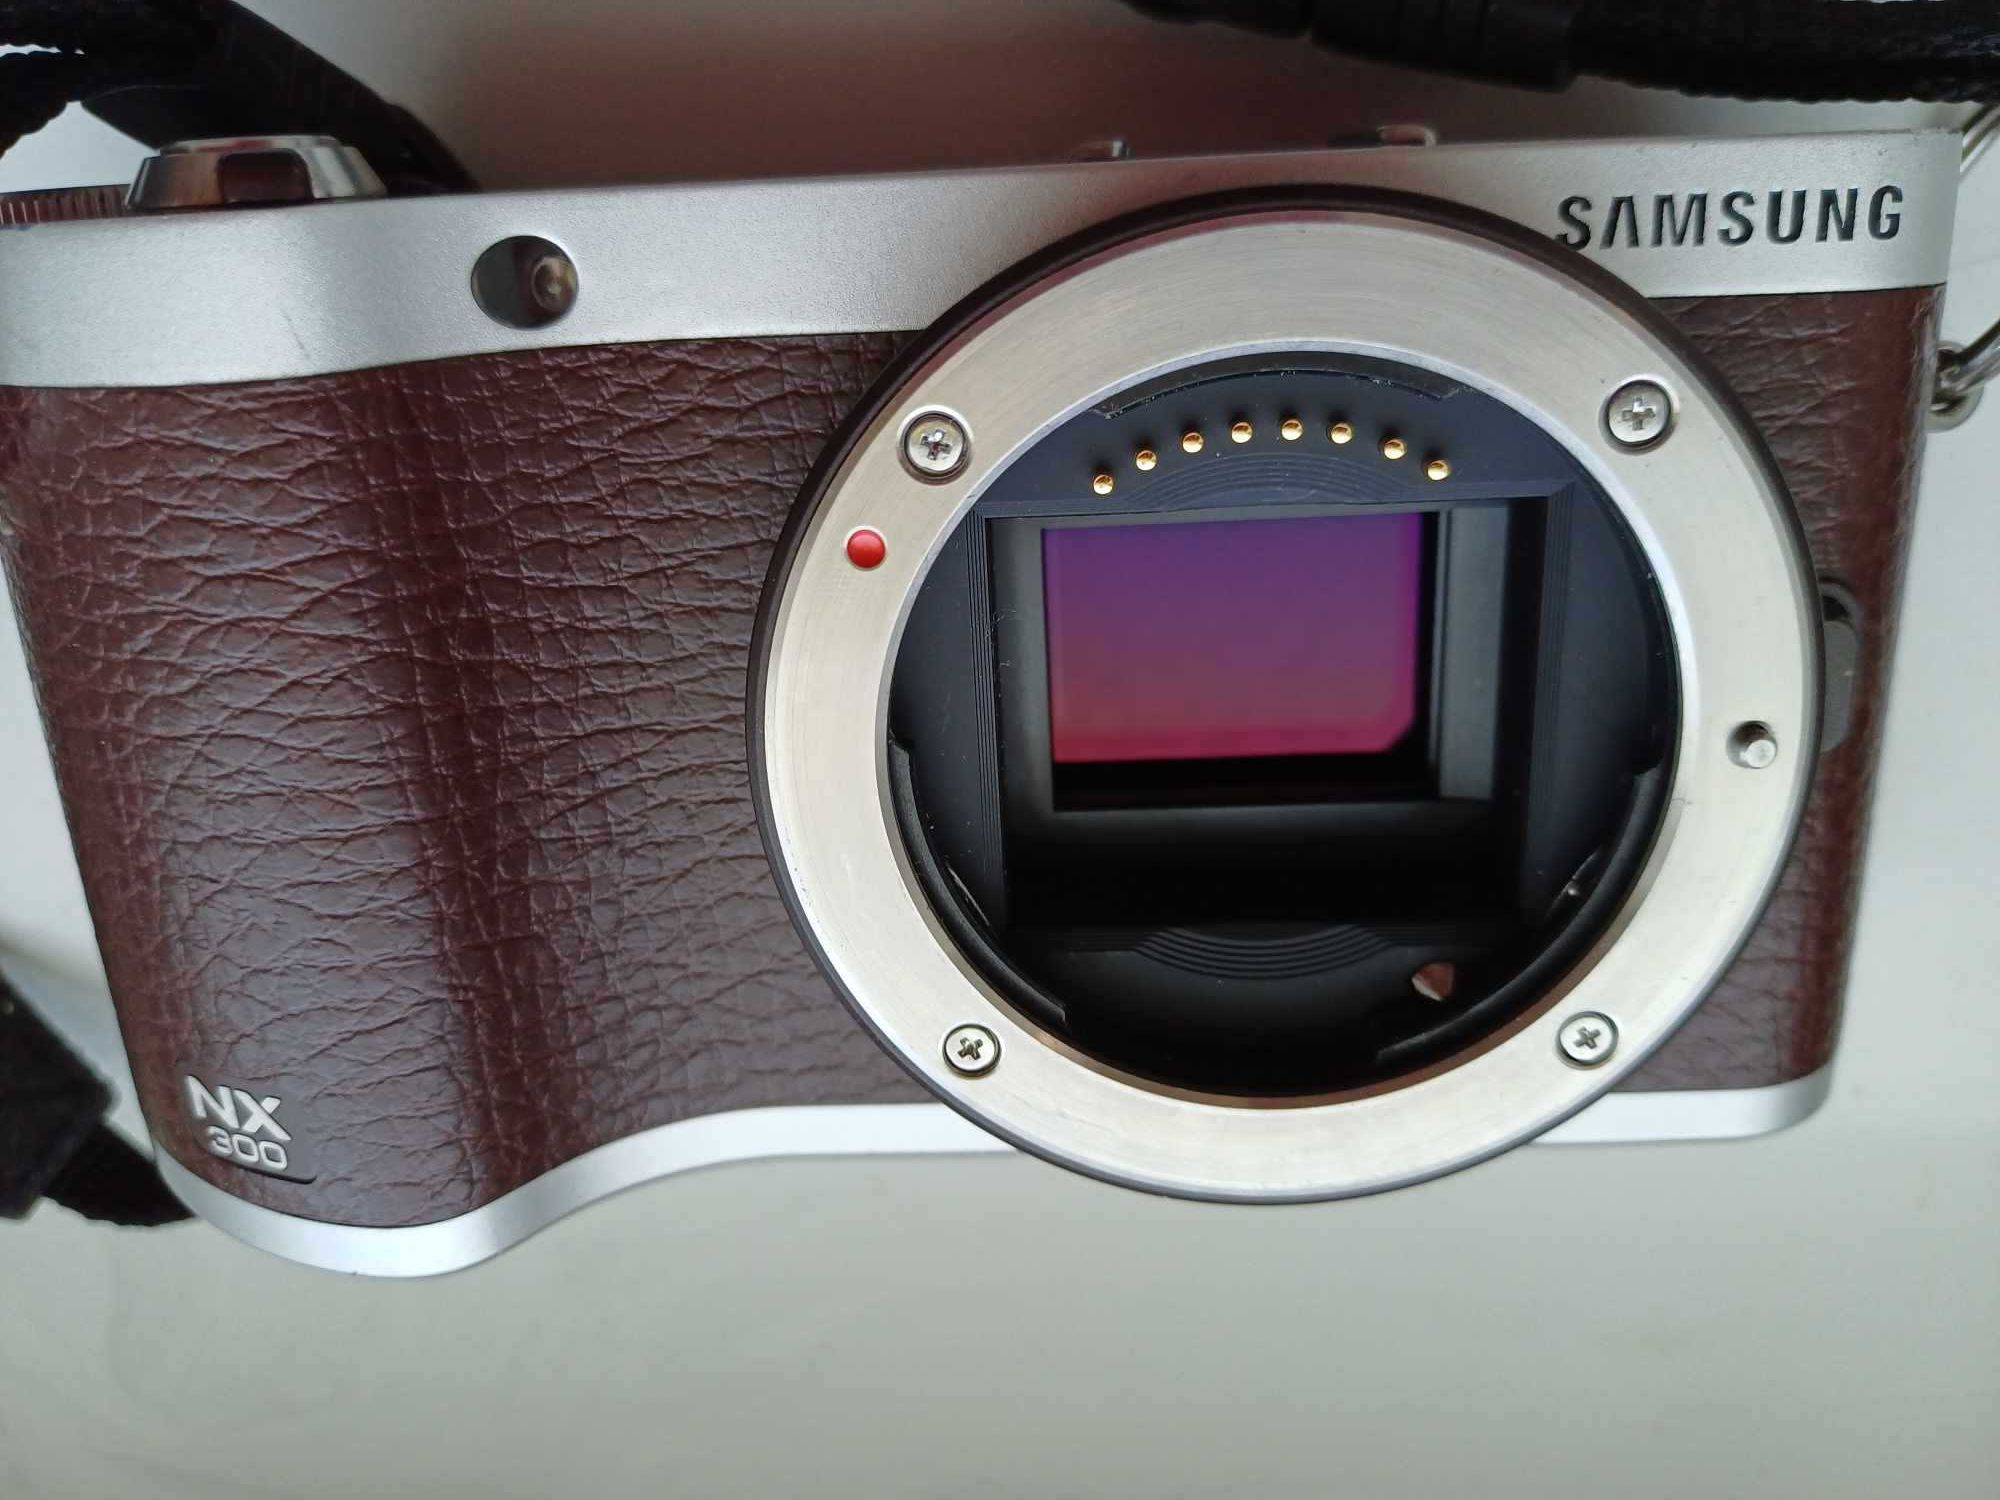 Zaawansowany aparat bezlusterkowy Samsung NX300 brązowy zestaw foto